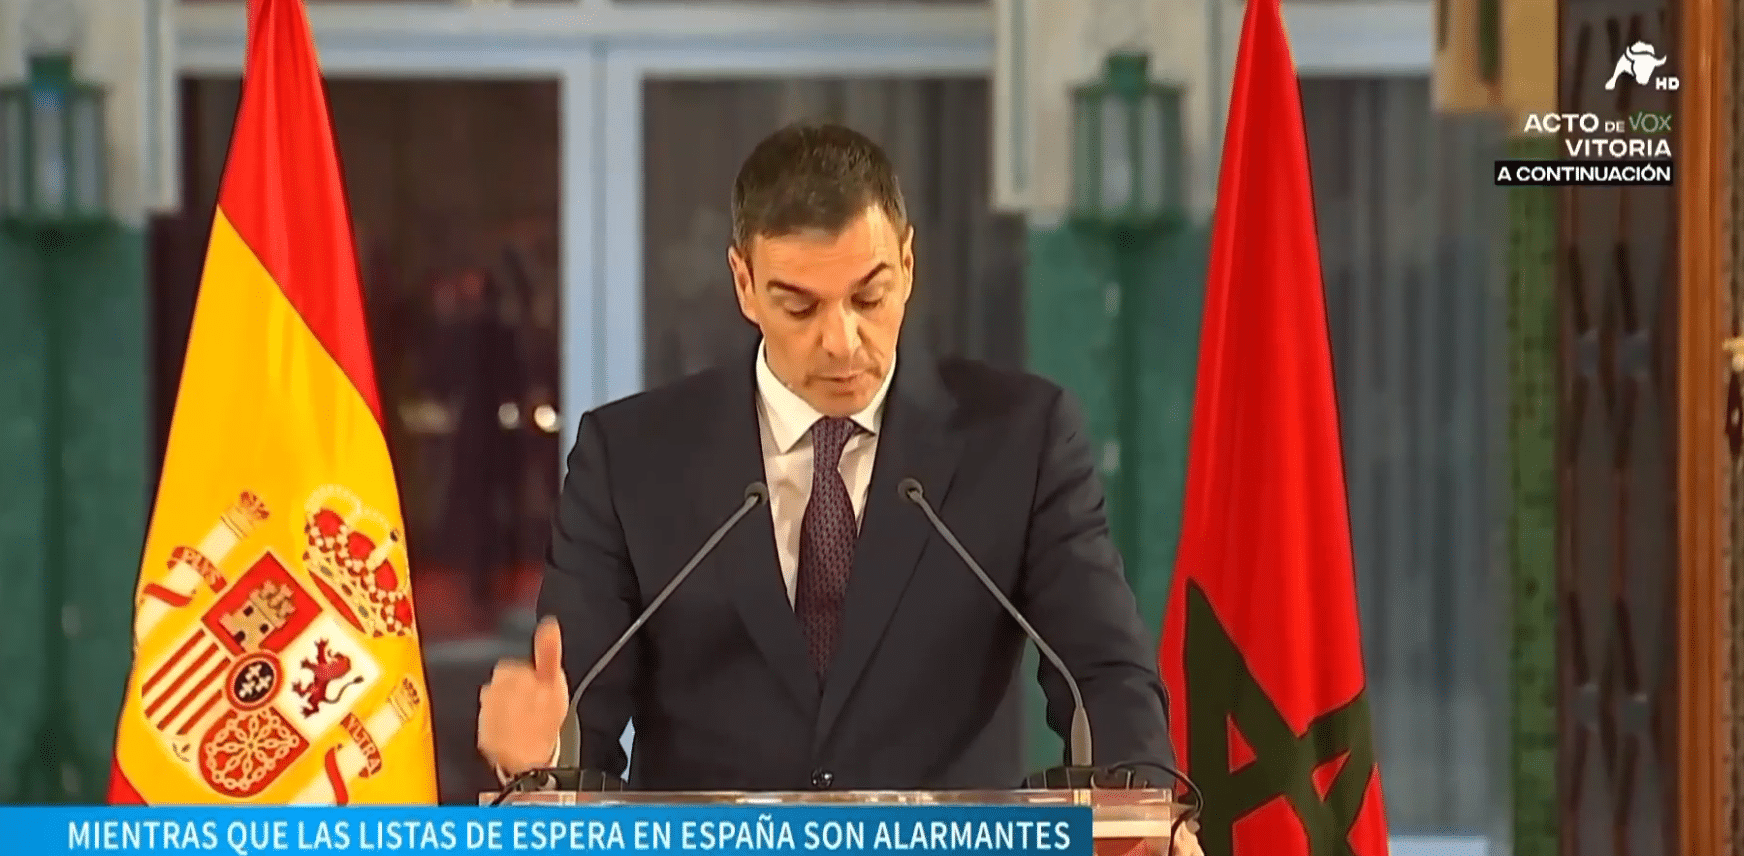 Sánchez da a Marruecos 500.000 euros para mejorar la medicina familiar mientras aumentan las listas de espera en España